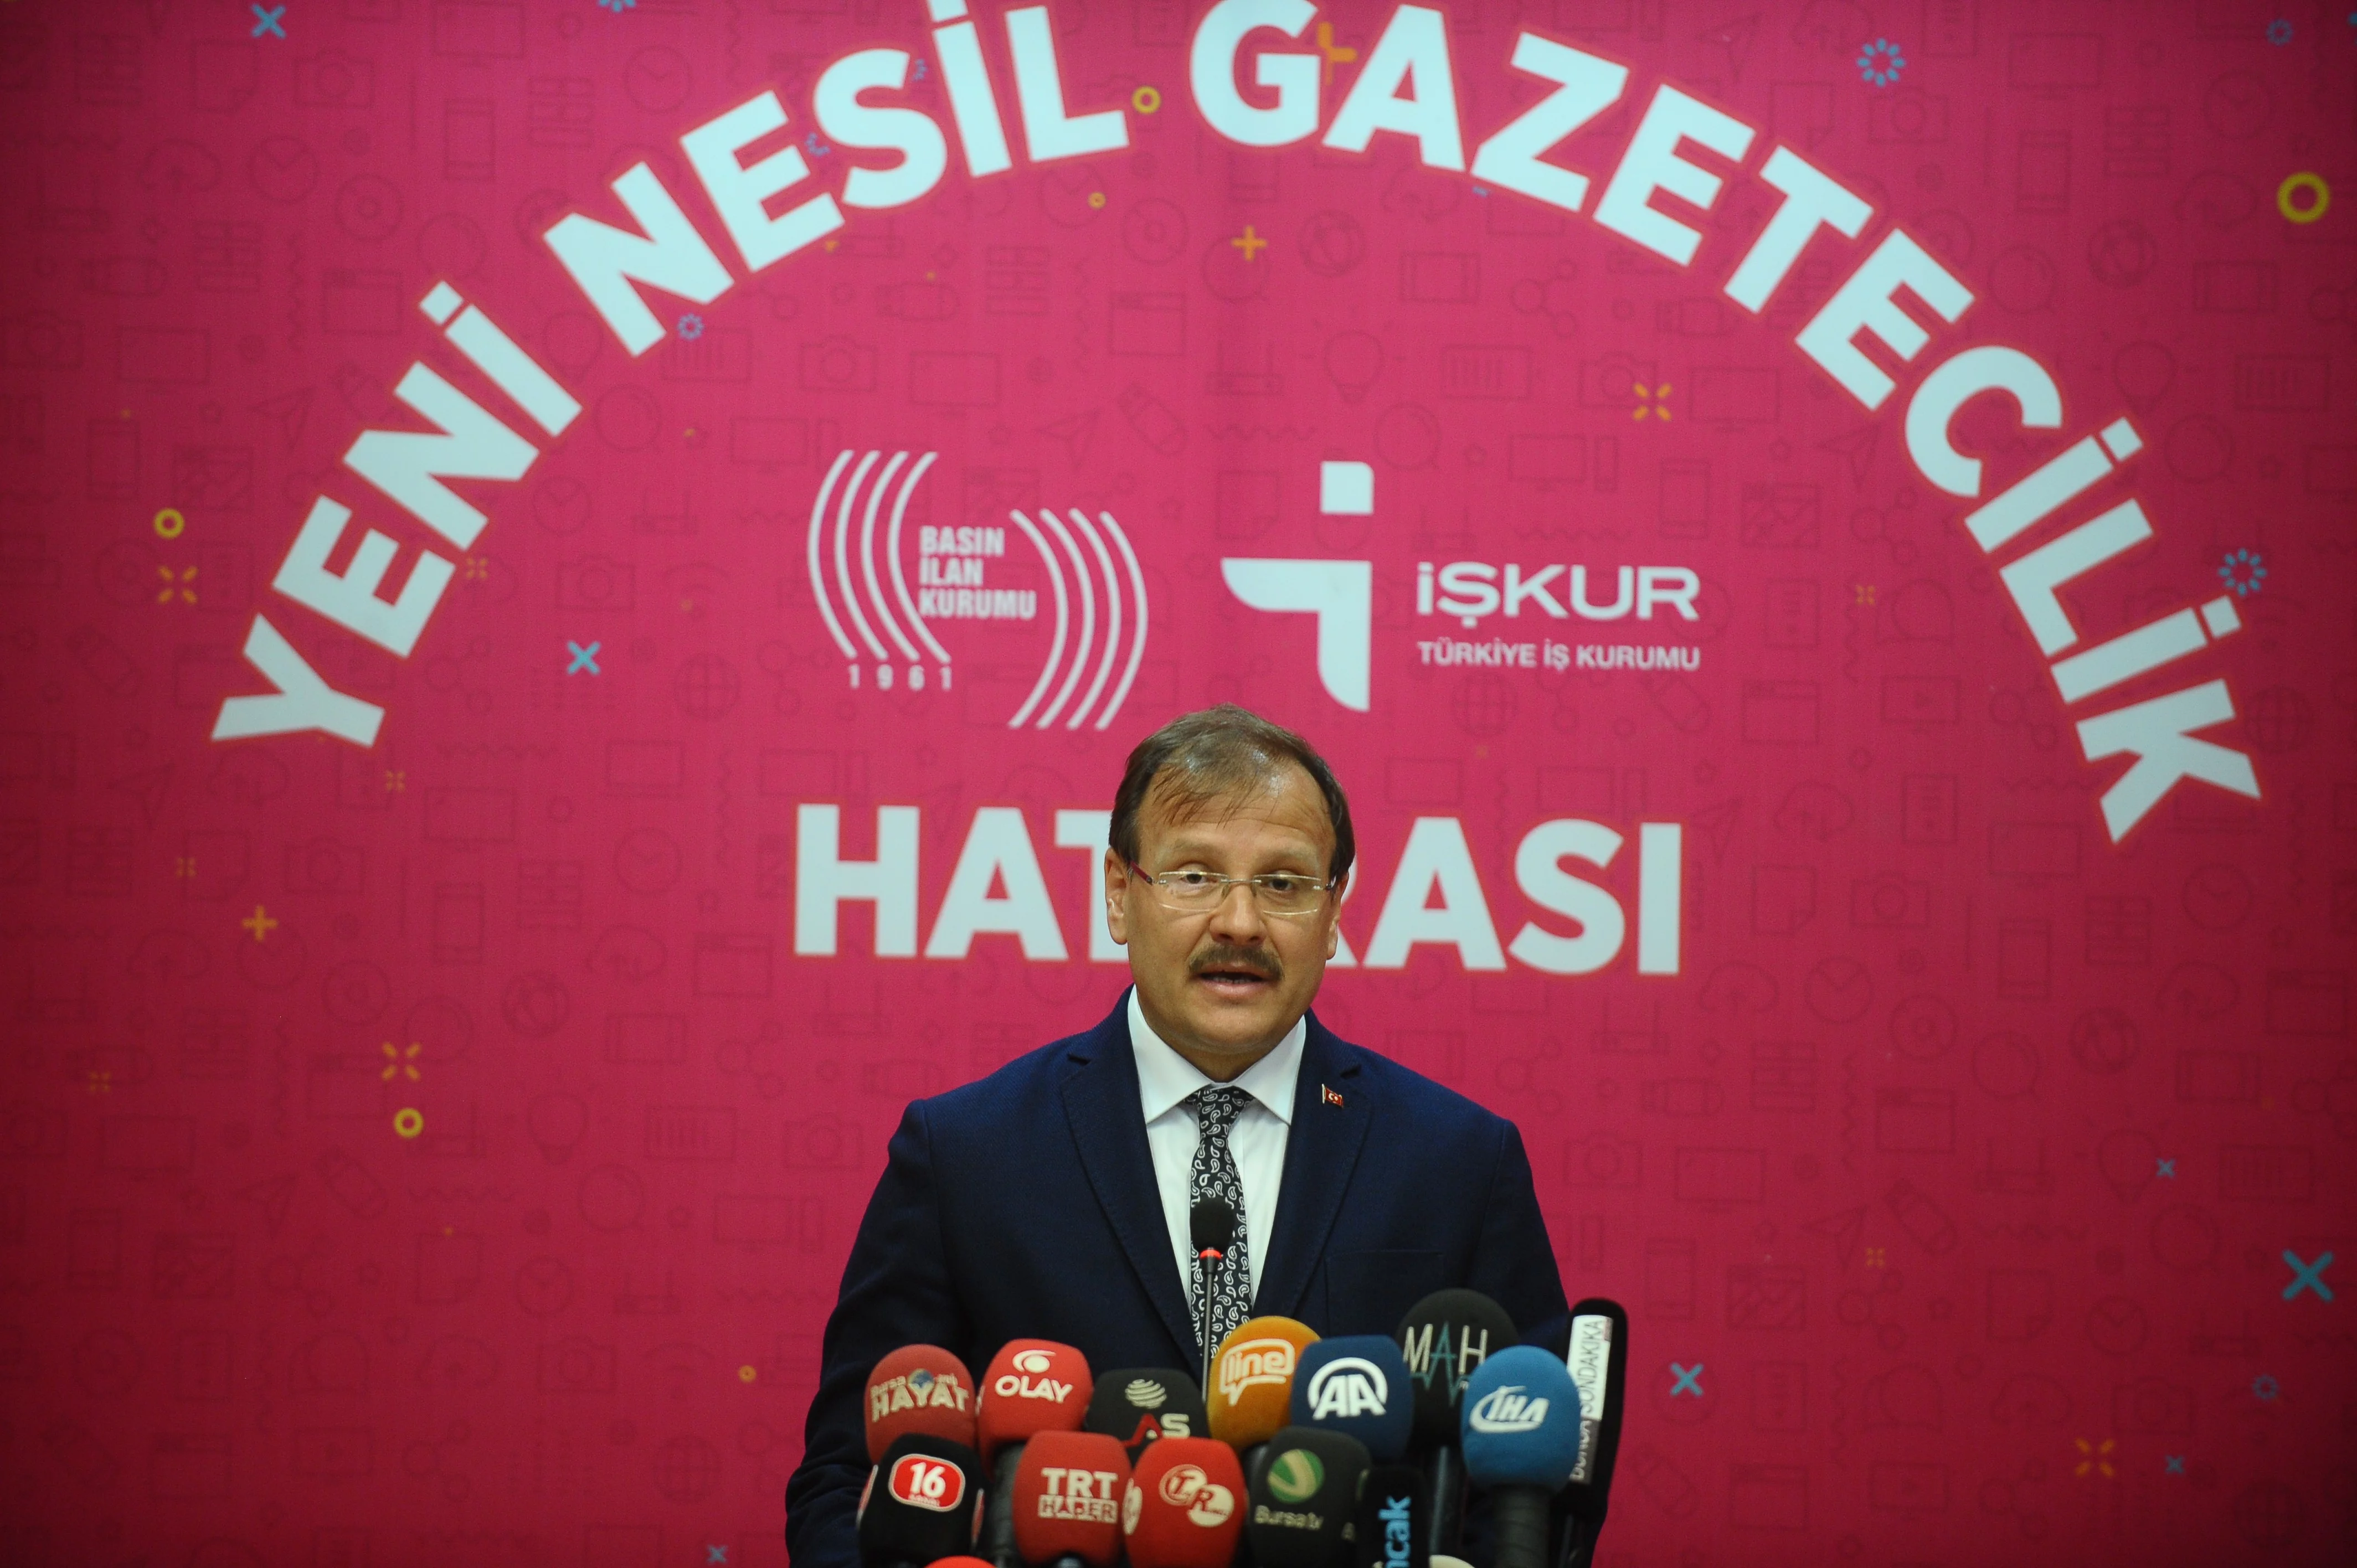 Başbakan Yardımcısı Hakan Çavuşoğlu: “15 Temmuz’da ülke işgal edilmeye çalışıldı”